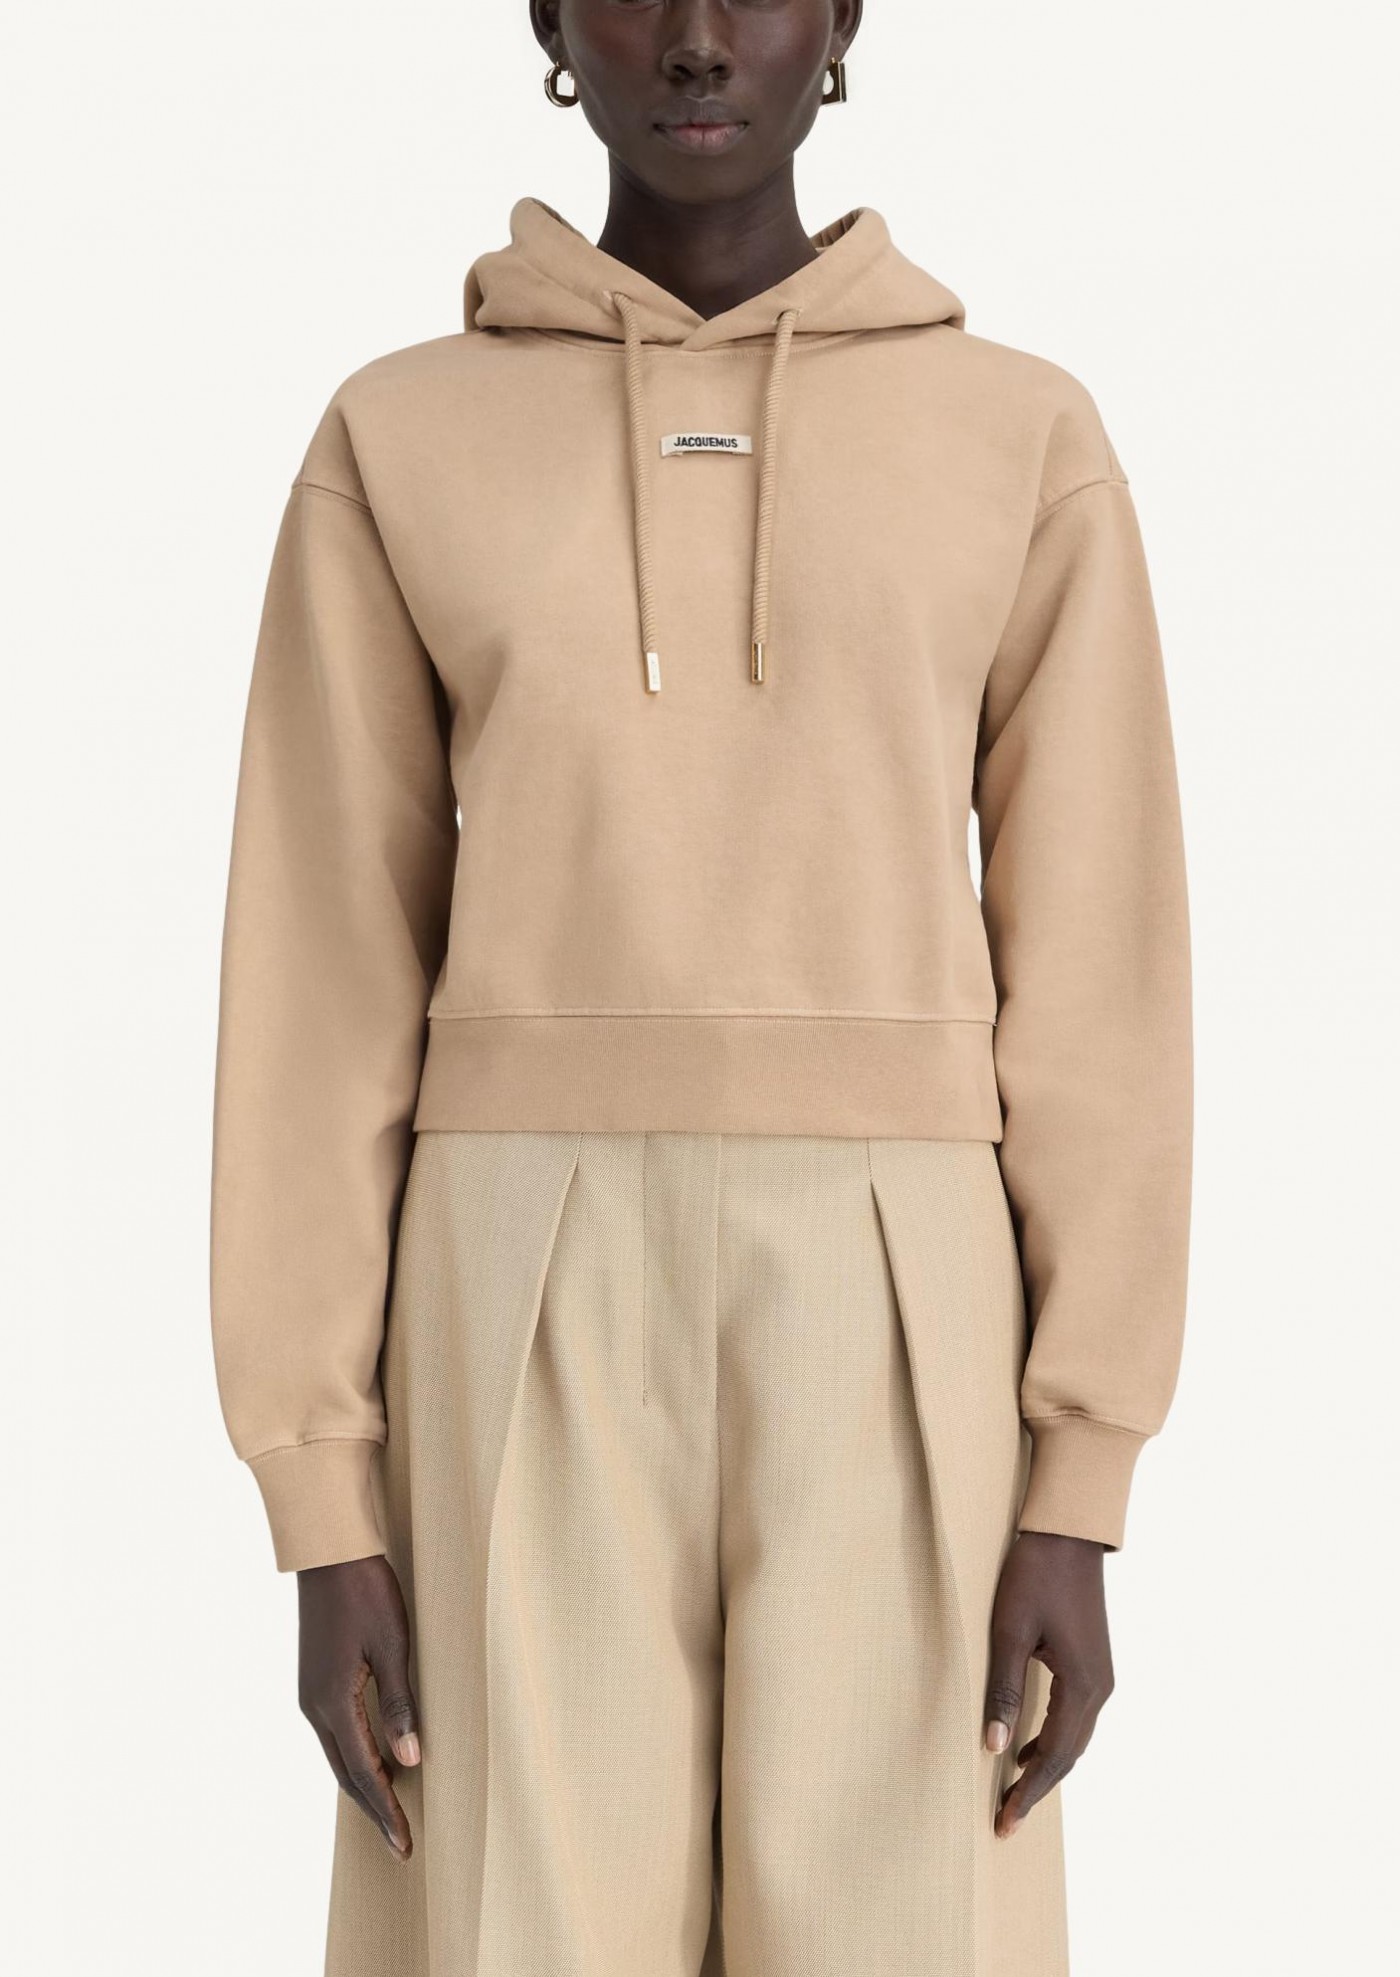 The beige Gros Grain hoodie